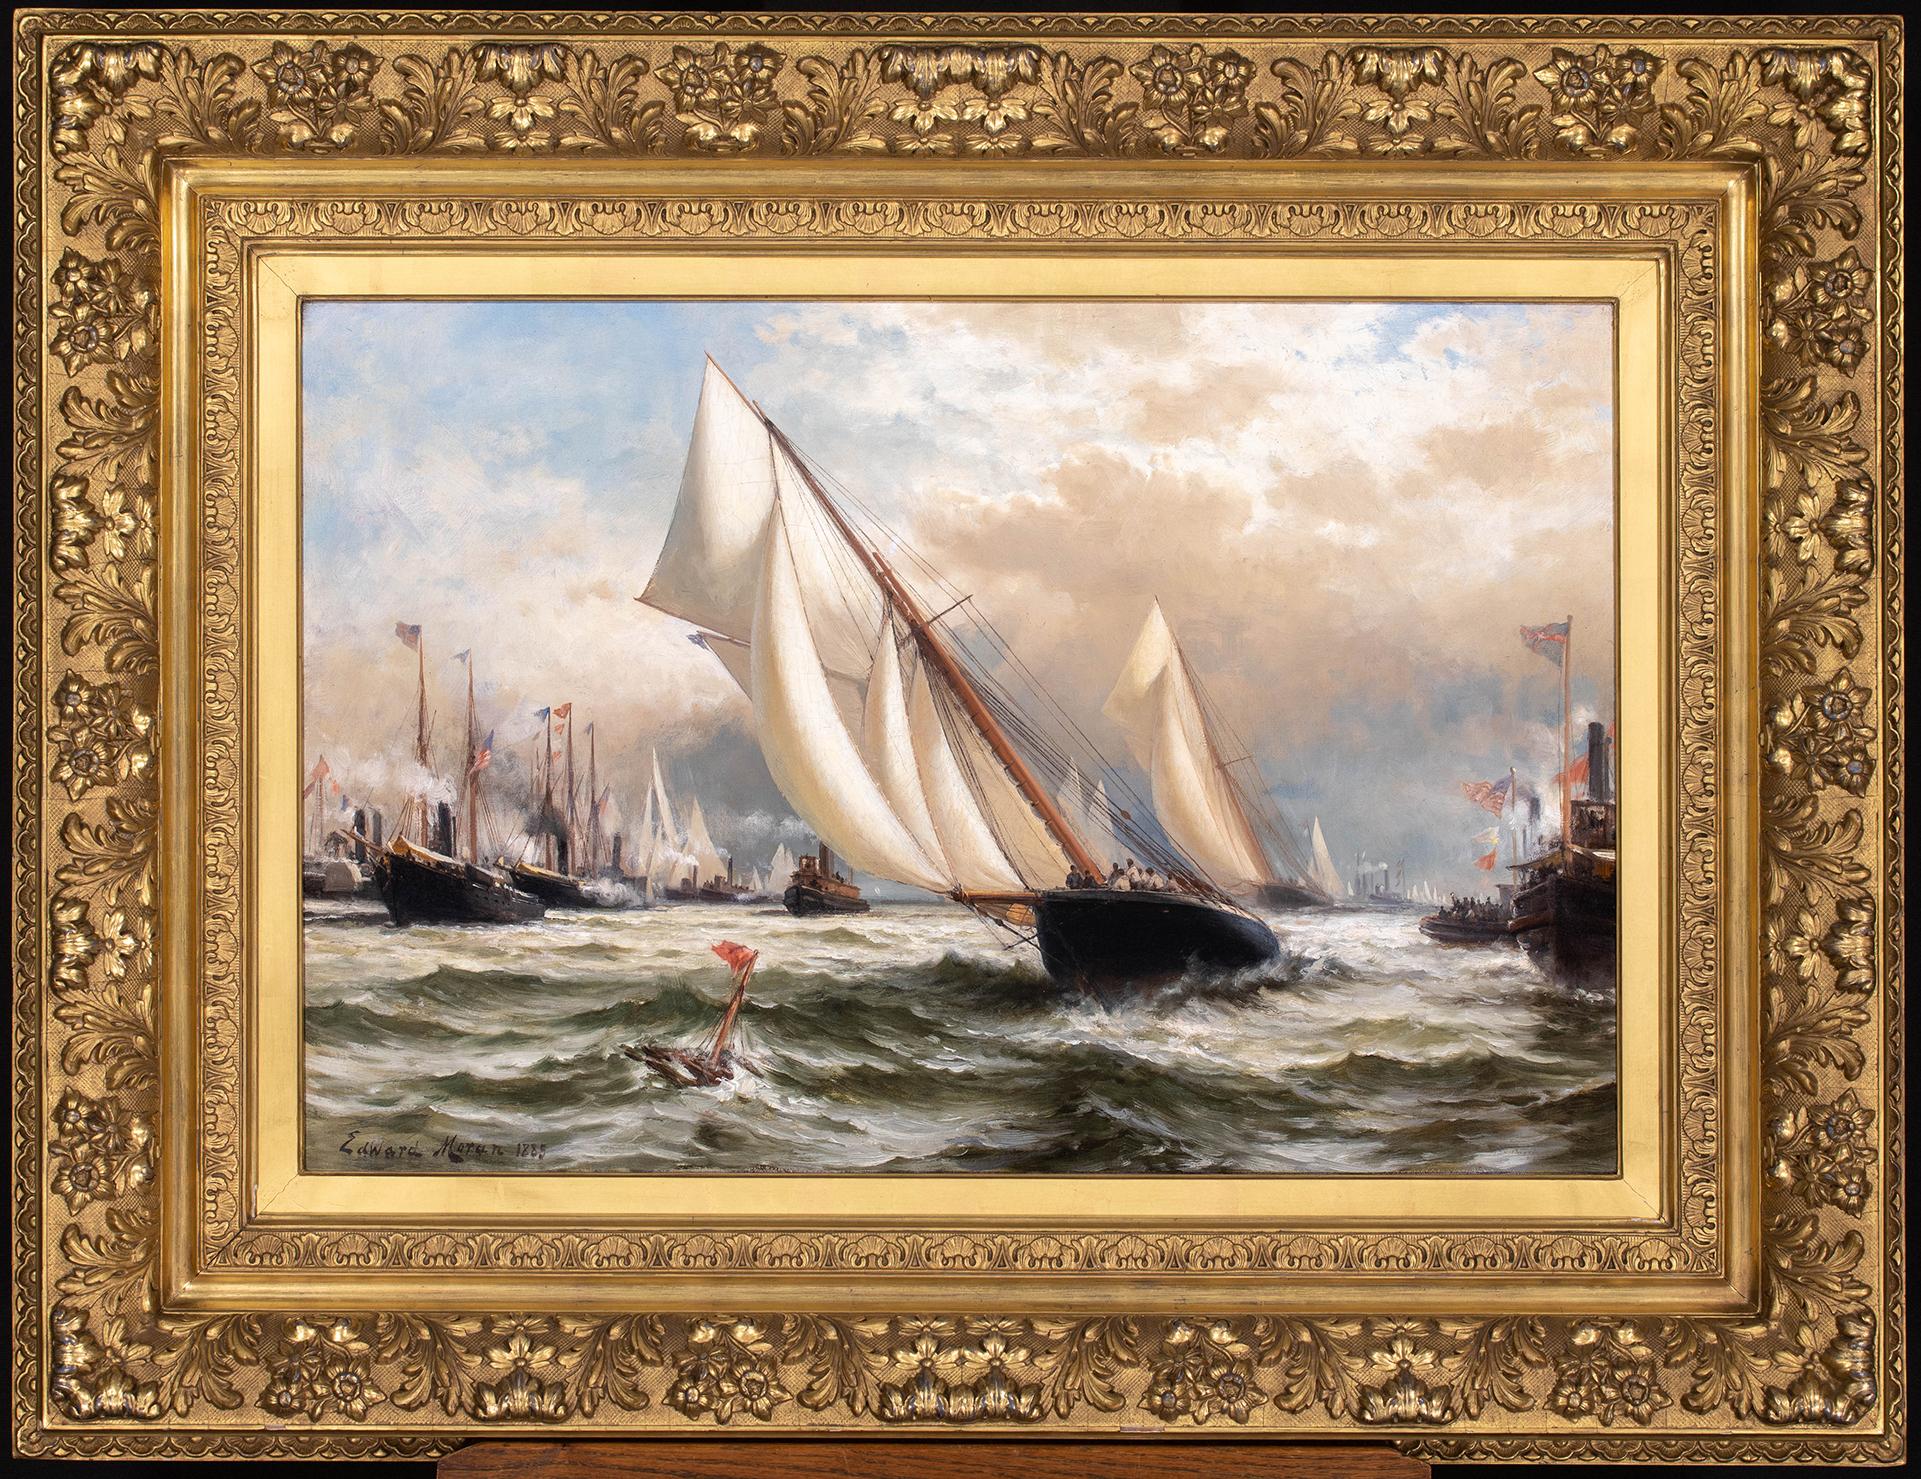 Cette impressionnante peinture d'Edward Moran rend justice à l'épopée de l'America's Cup de 1885.  Le point de vue de Moran rend compte de l'énormité de la journée pour les coureurs et les concepteurs de yachts du monde entier.  Ce récit décrit la